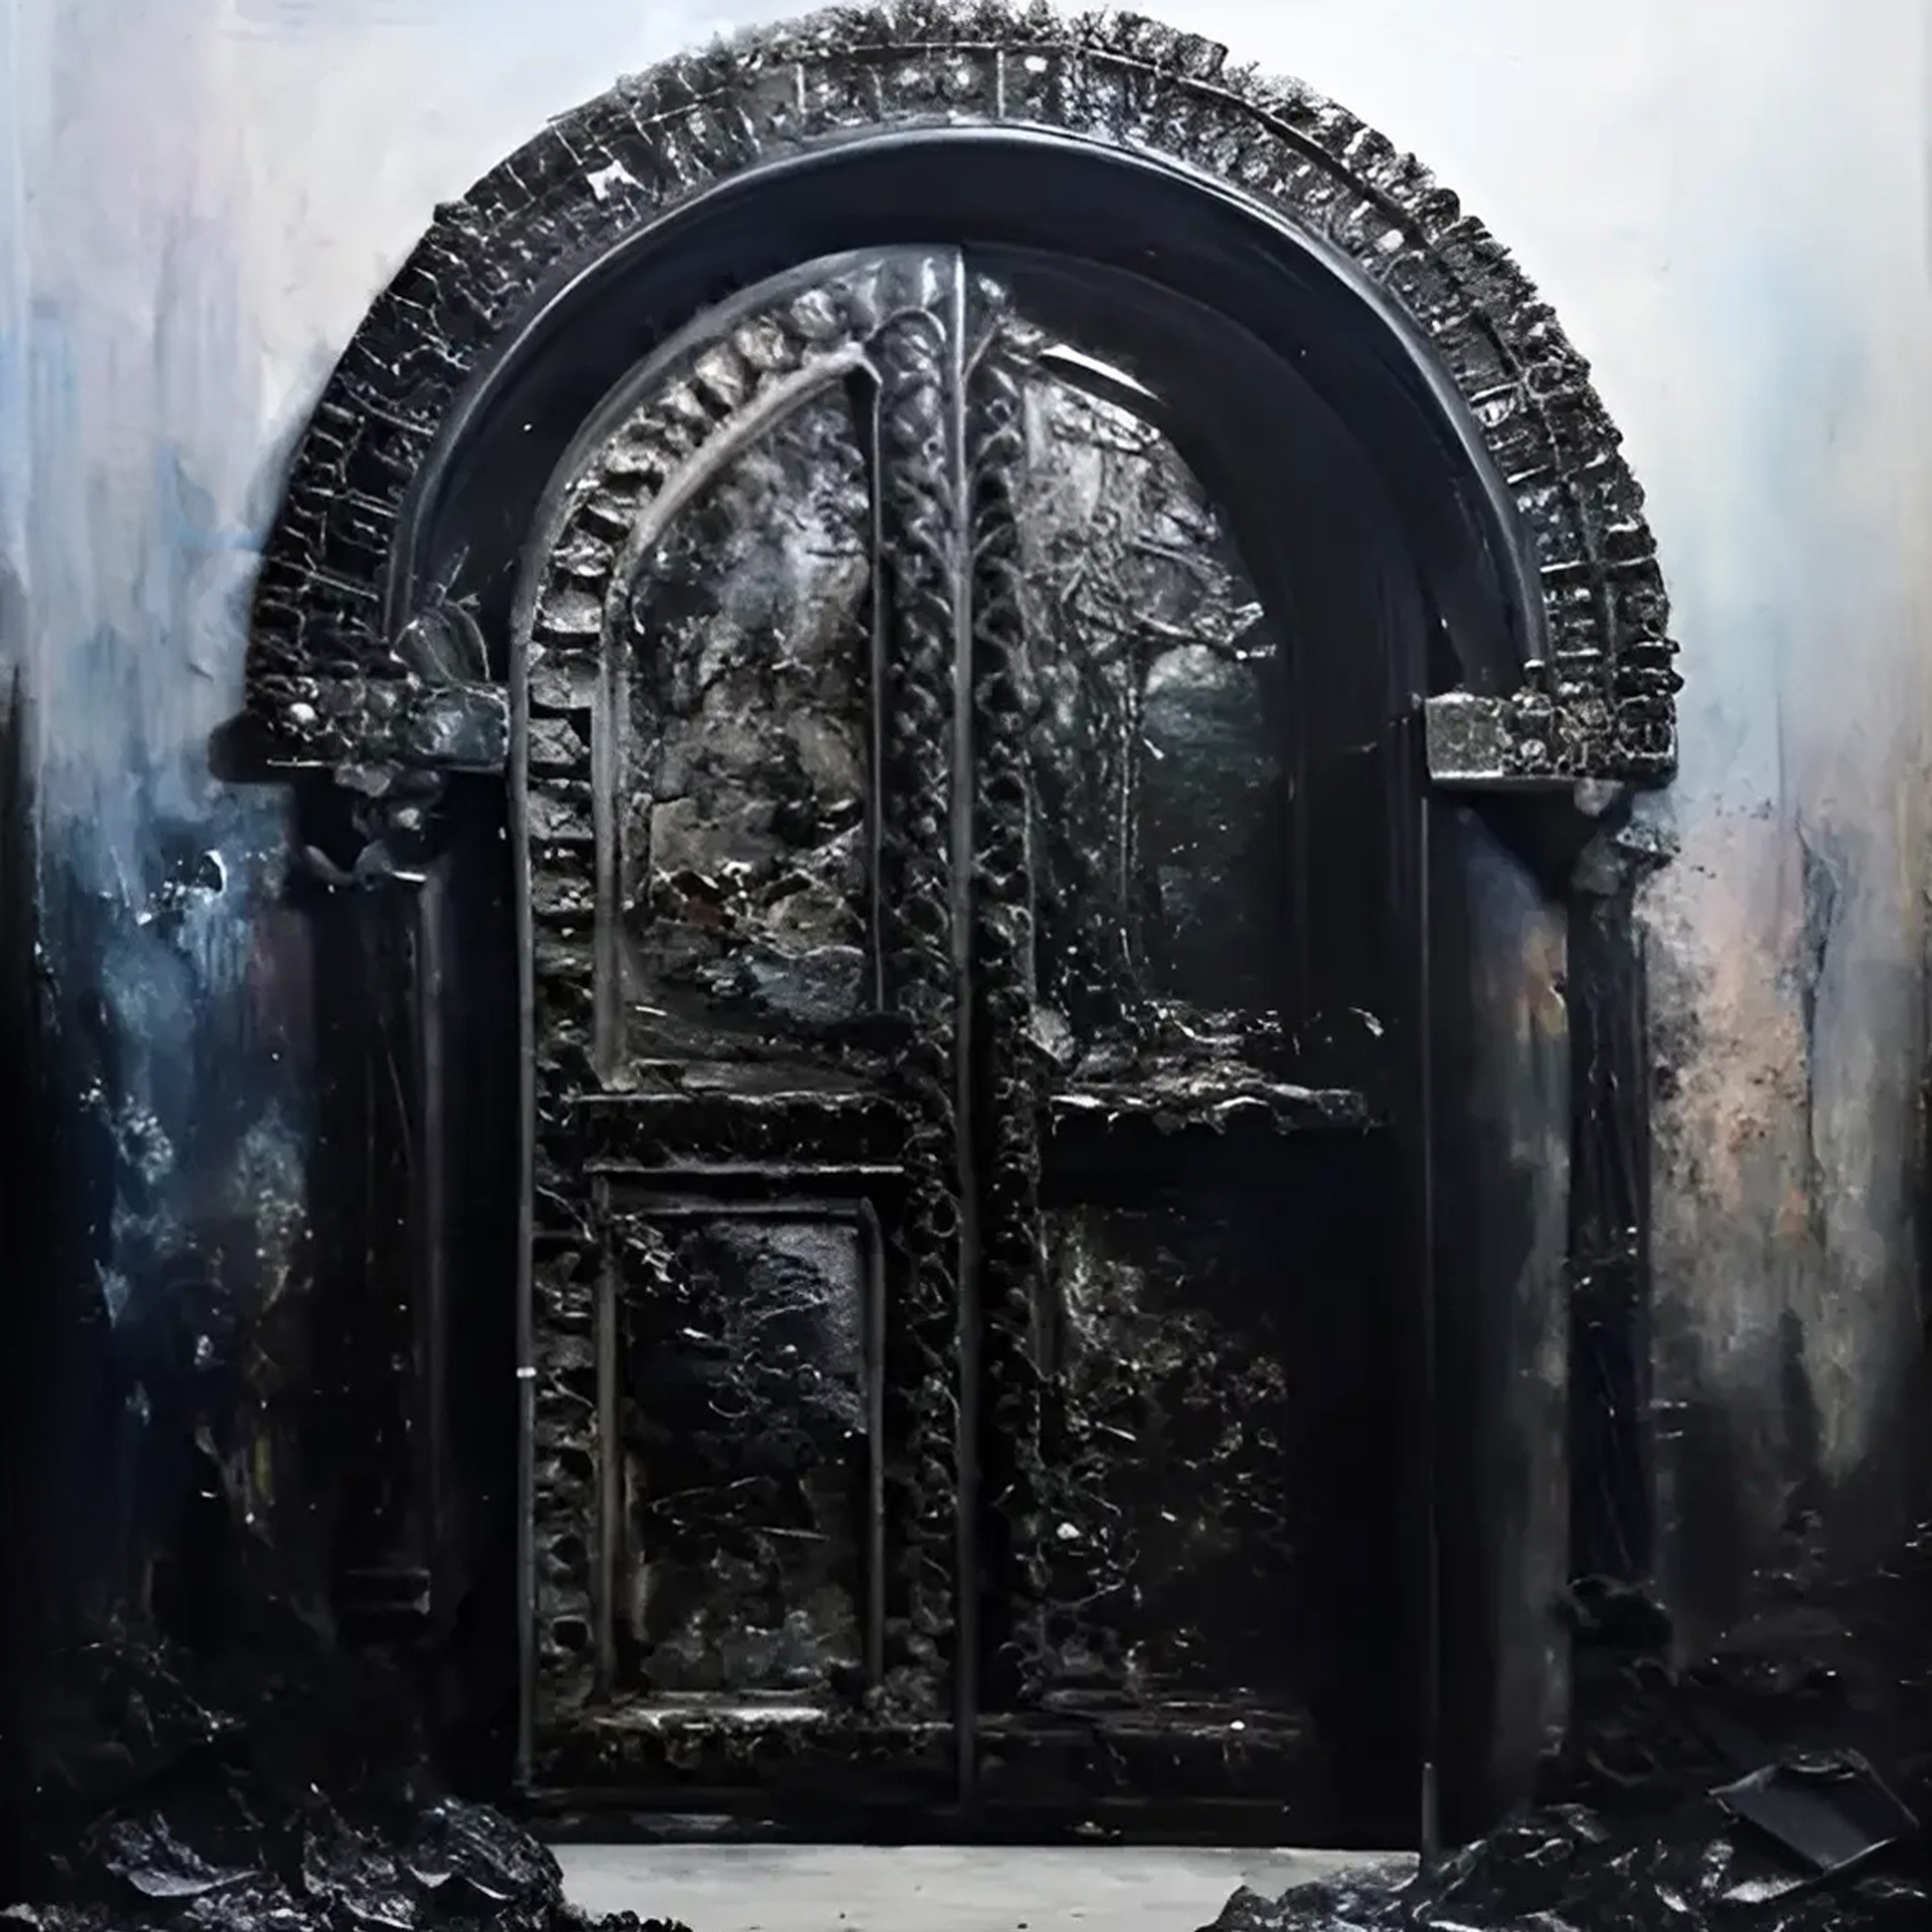 III - The door of XNLKX